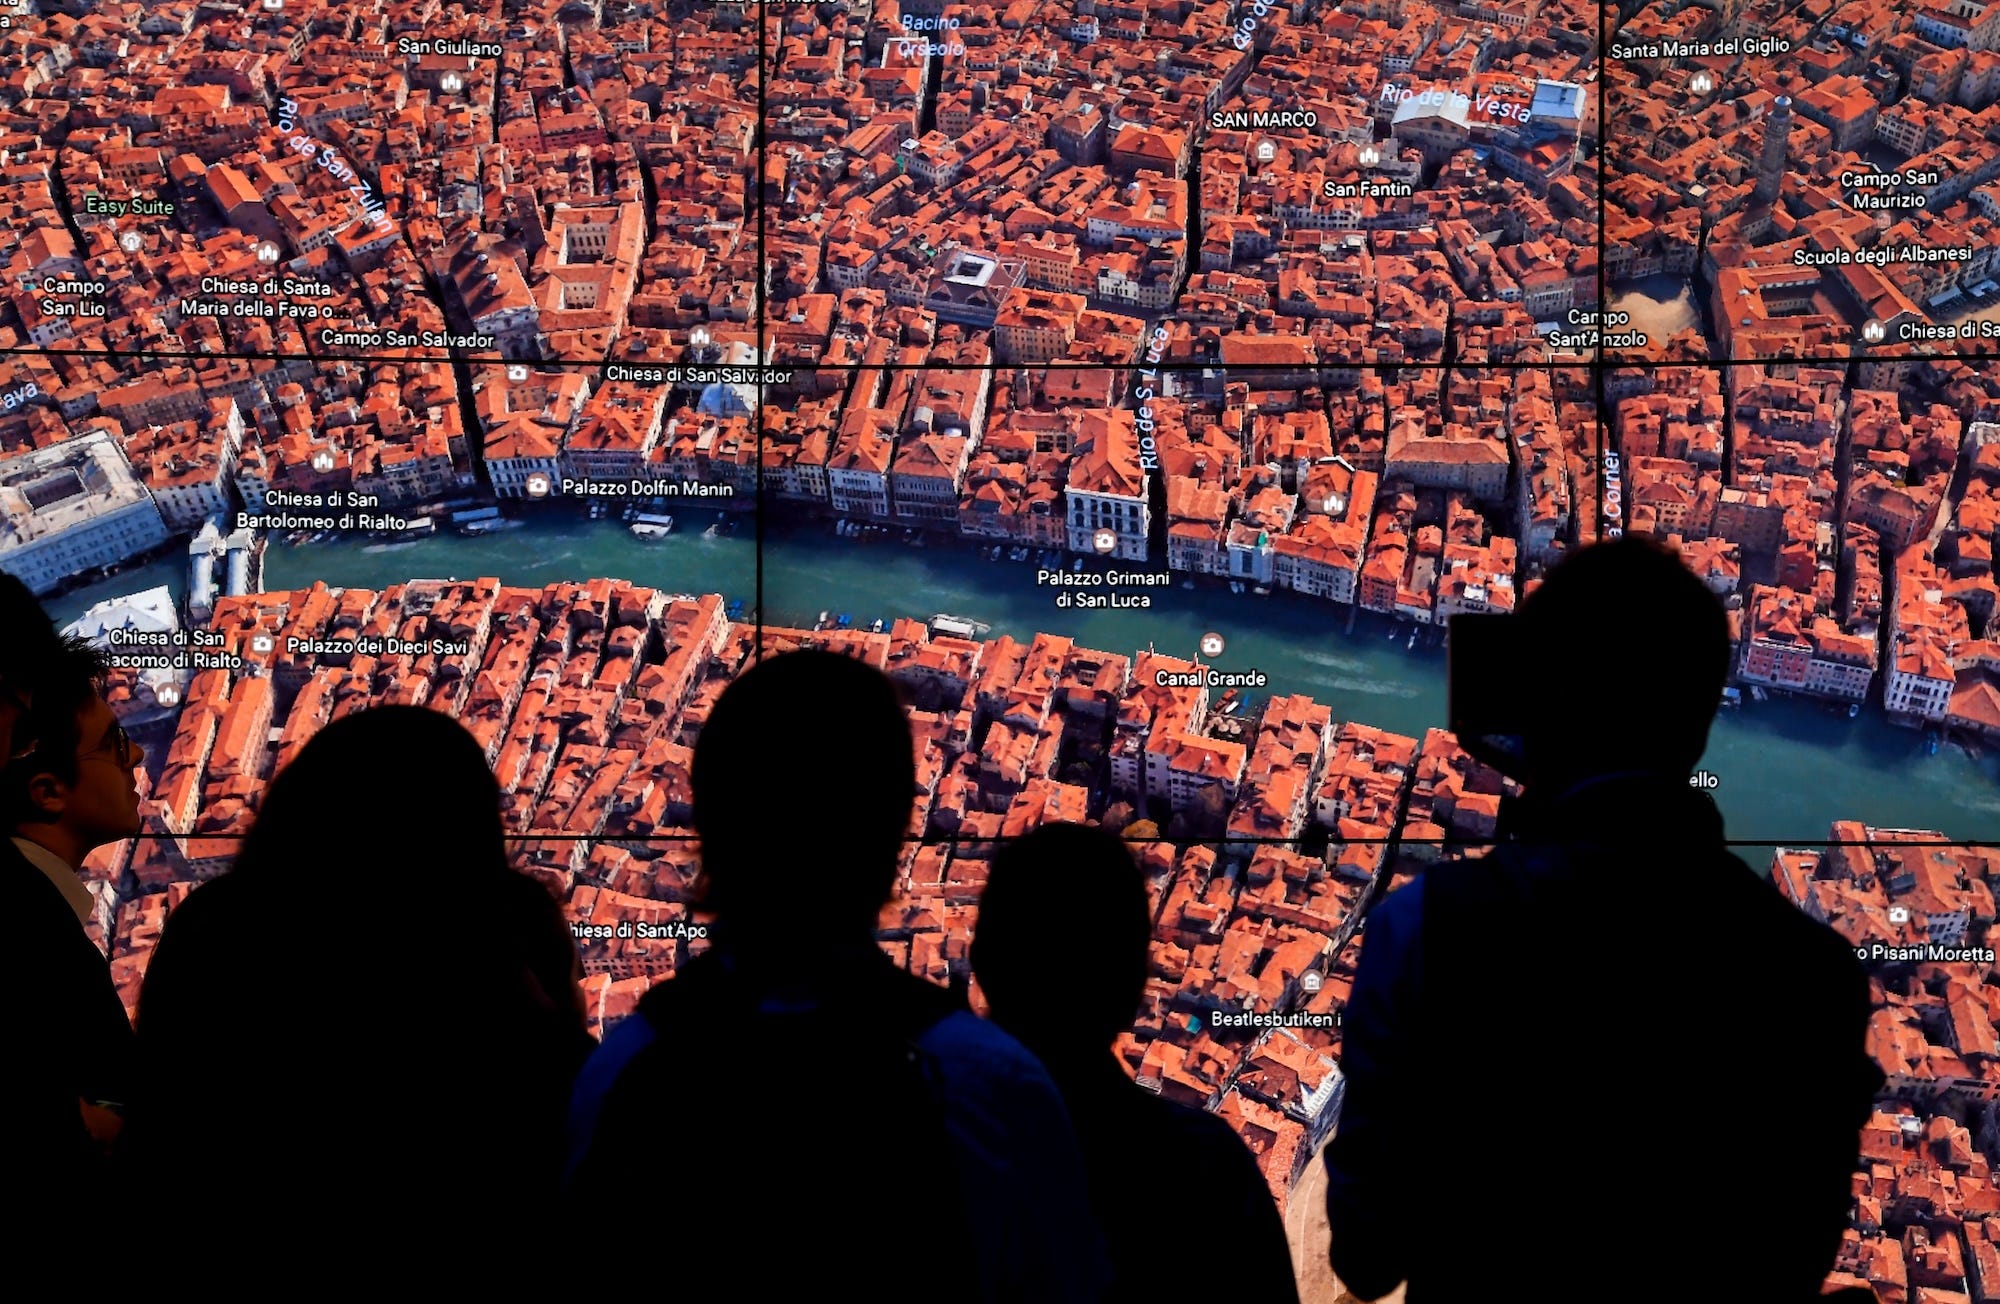 Eine Gruppe von Menschen steht vor einem großen Bildschirm, auf dem ein Satellitenbild von Italien von Google Earth zu sehen ist.